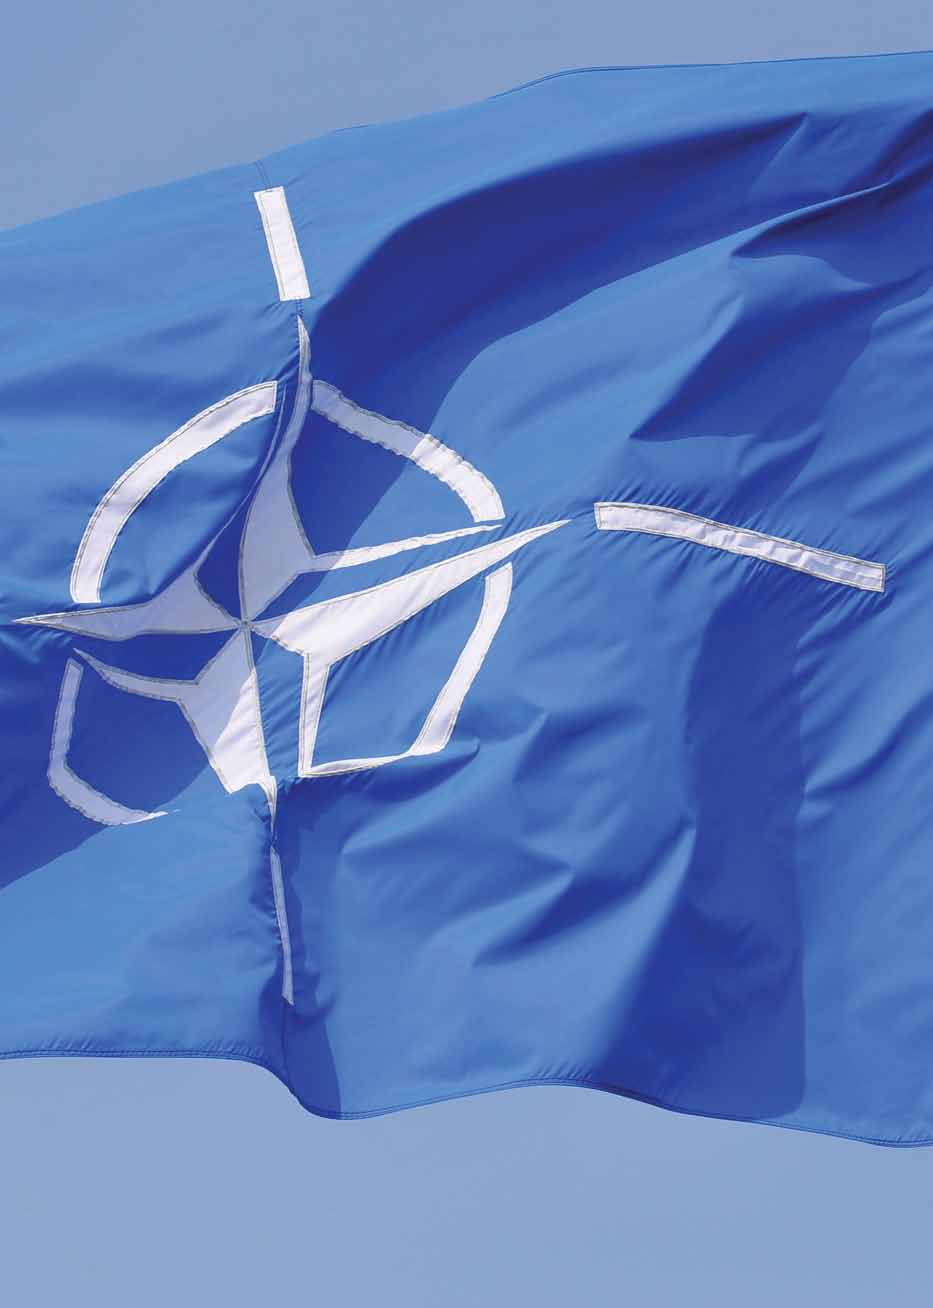 Nous, dirigeants politiques de l OTAN, sommes déterminés à poursuivre la rénovation de notre Alliance pour qu elle soit à même de relever les défis de sécurité du XXI e siècle.